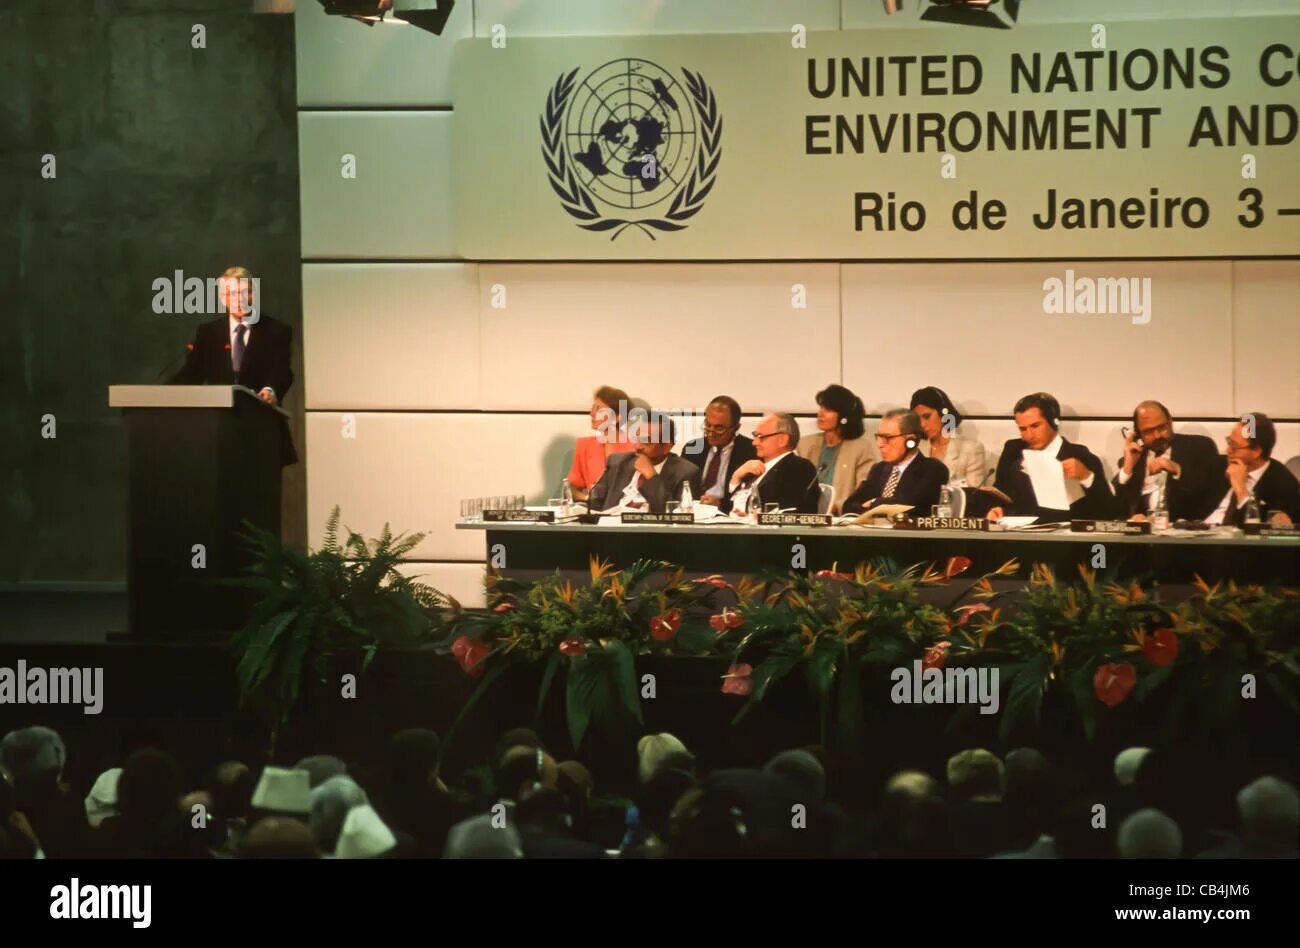 Международная конференция экология. Конференция ООН В Рио де Жанейро 1992. Конференция ООН по окружающей среде и развитию в Рио-де-Жанейро. Конференции ООН по окружающей среде в Рио-де-Жанейро (1992 г.)». Саммит в Рио де Жанейро 1992.